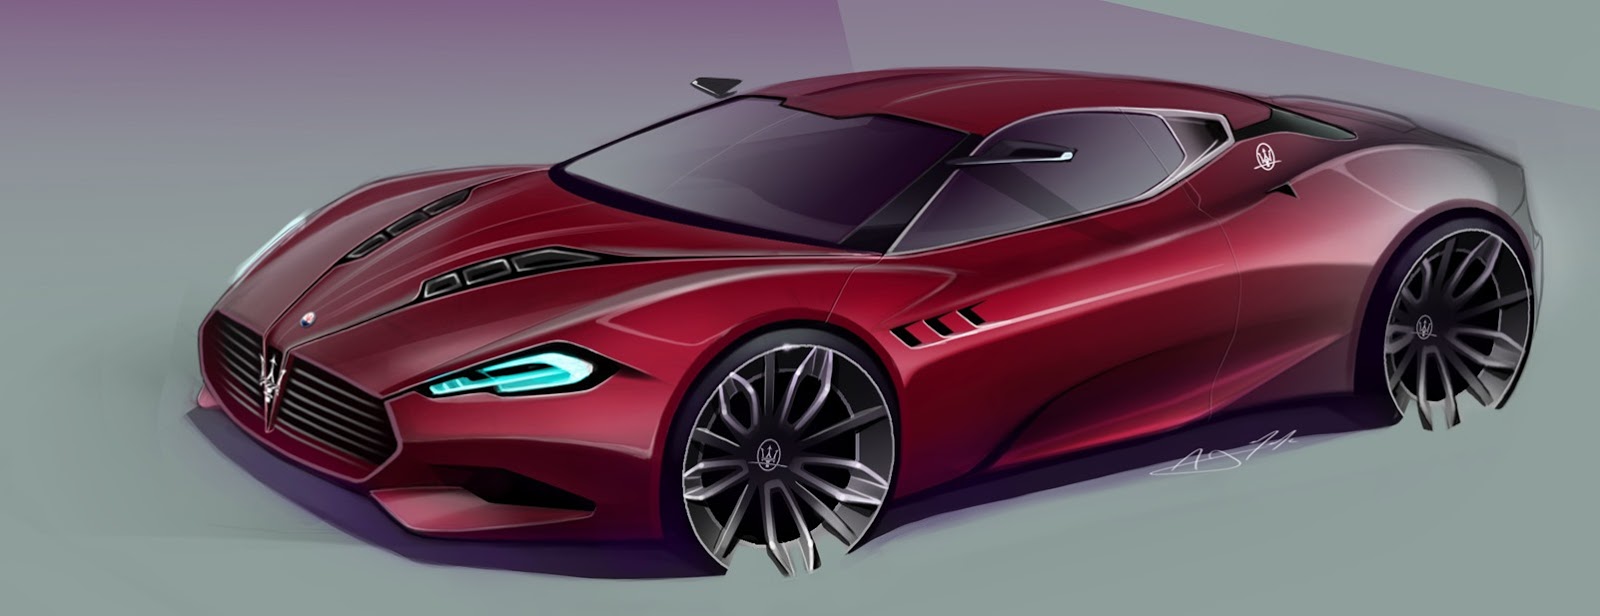 مازيراتي "جران كورسا" دراسة تصميم جديد وأنيق للسيارات الكوبية Maserati GranCorsa 21